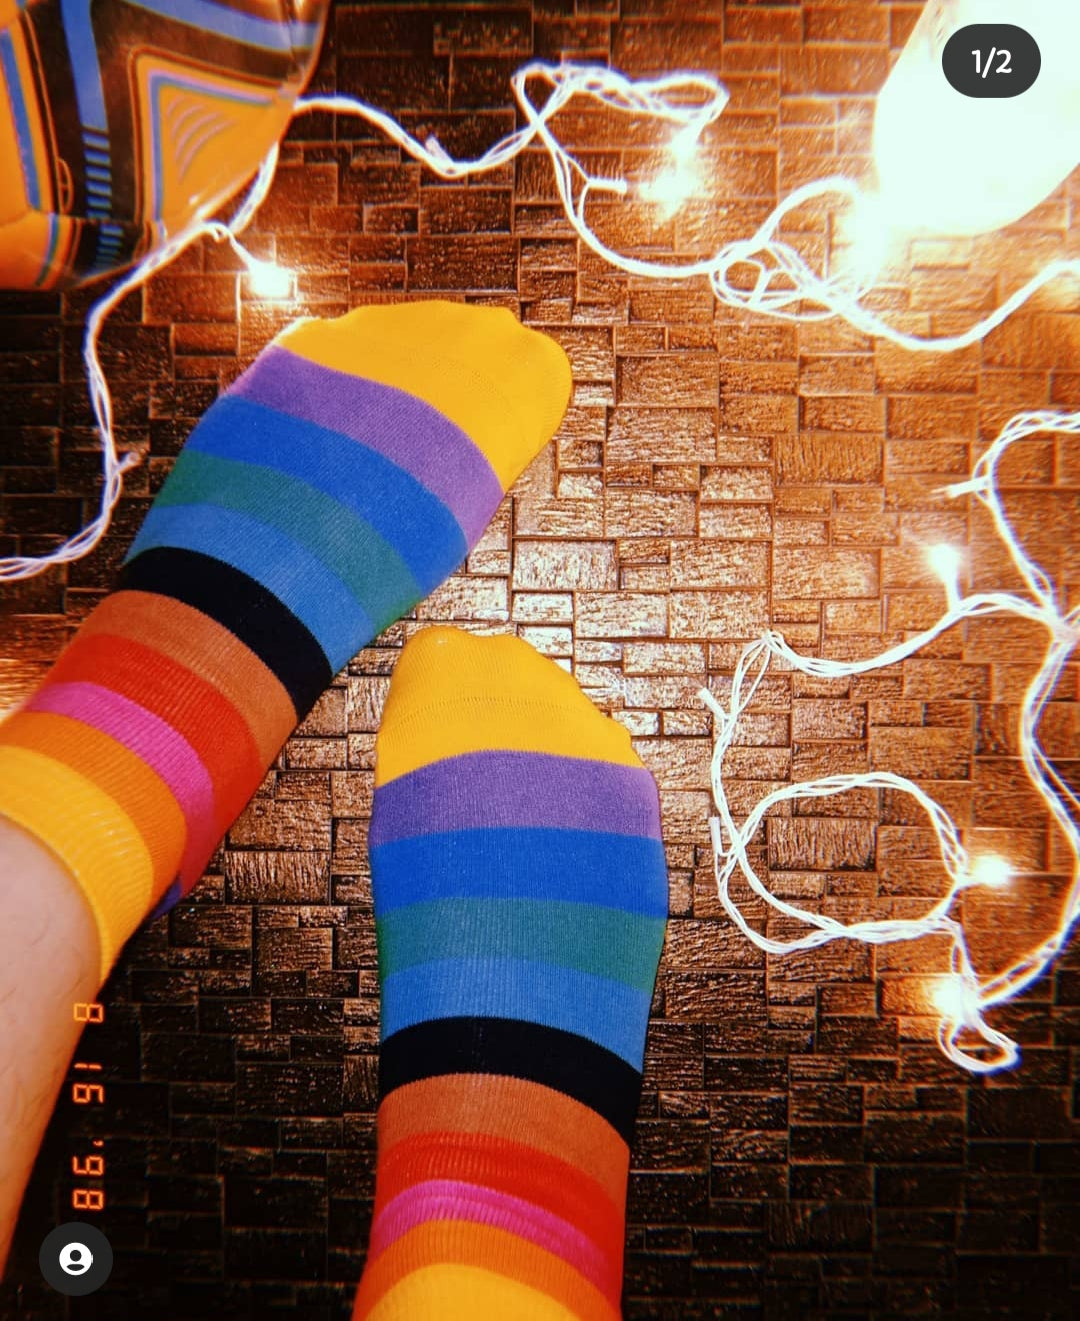 Multicoloured Stripes | Ankle Socks for Men and Women